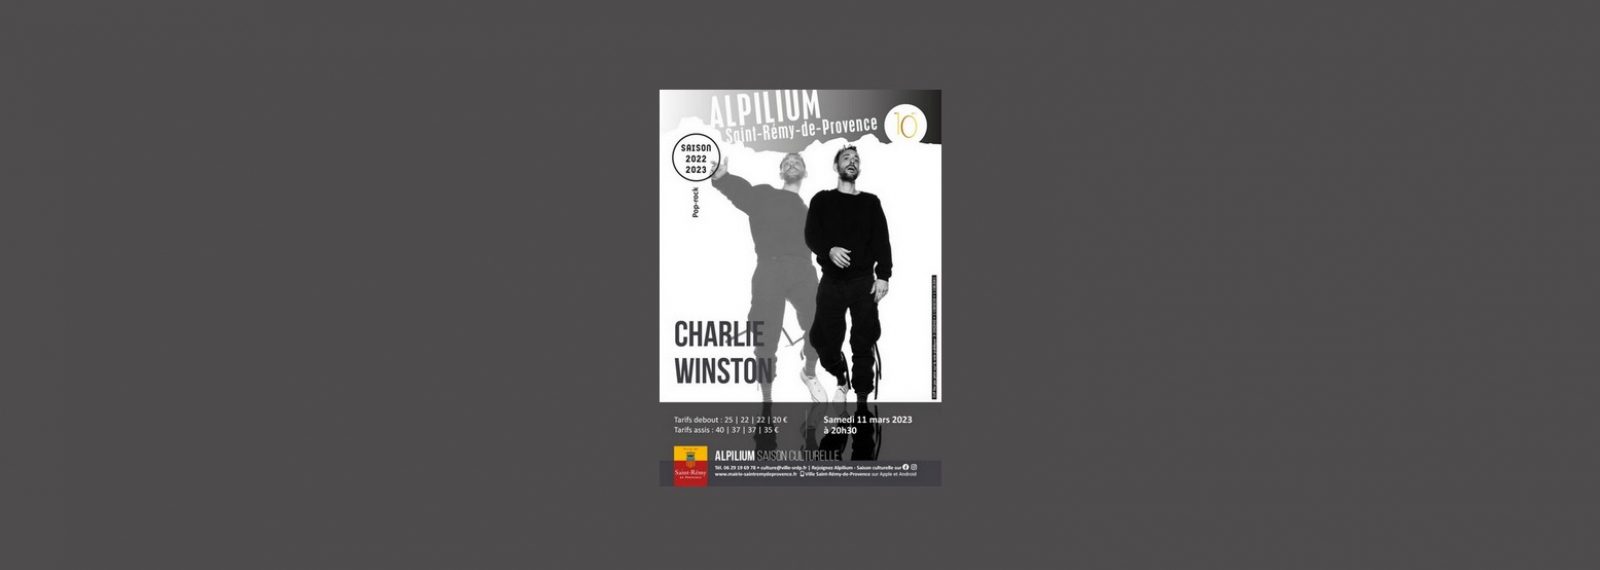 Concert de Charlie Winston à l'Alpilium